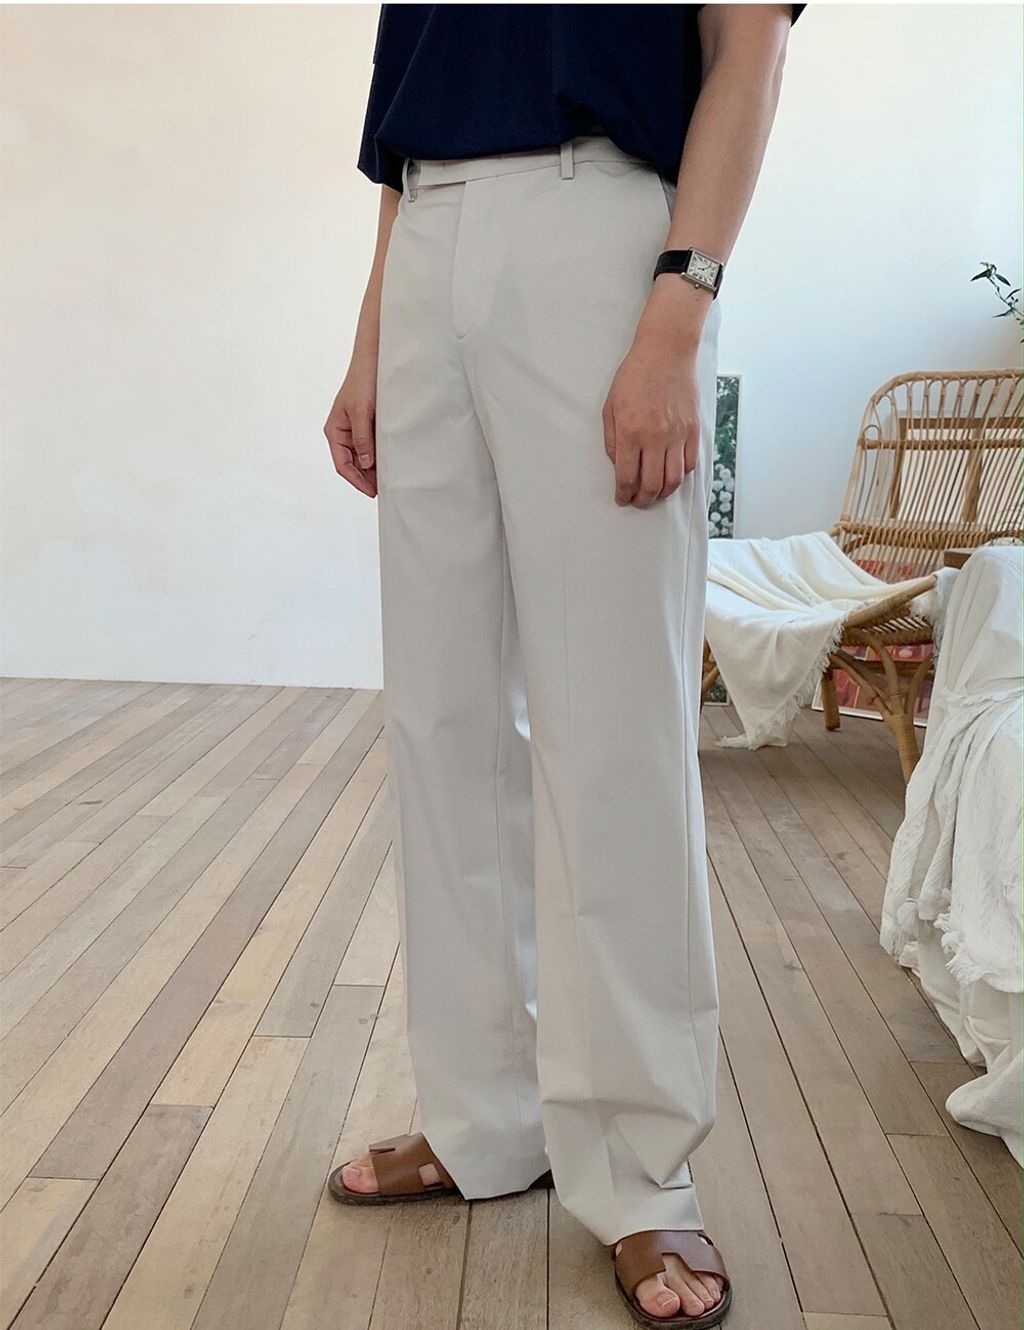 OPPAKOREA Coolmax 隱藏鬆緊微寬休閒褲 (7色) (春夏推薦/舒適涼爽)